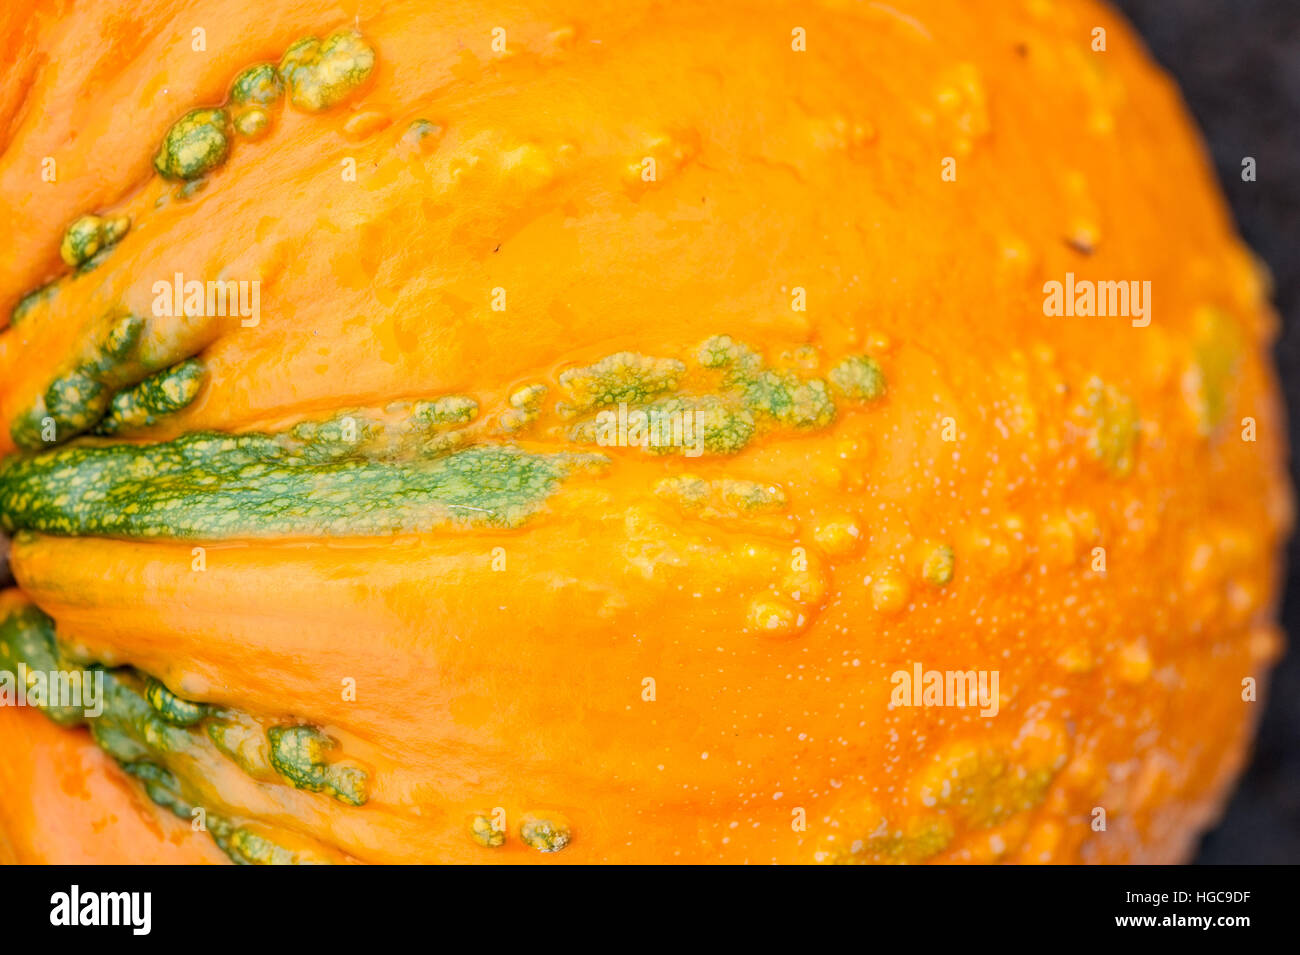 Knucklehead Kürbis, Curcurbita Pepo, ein Sommerkürbis Hybridsorte mit orangefarbenen und grünen Rinde und holprigen warzige Textur Stockfoto